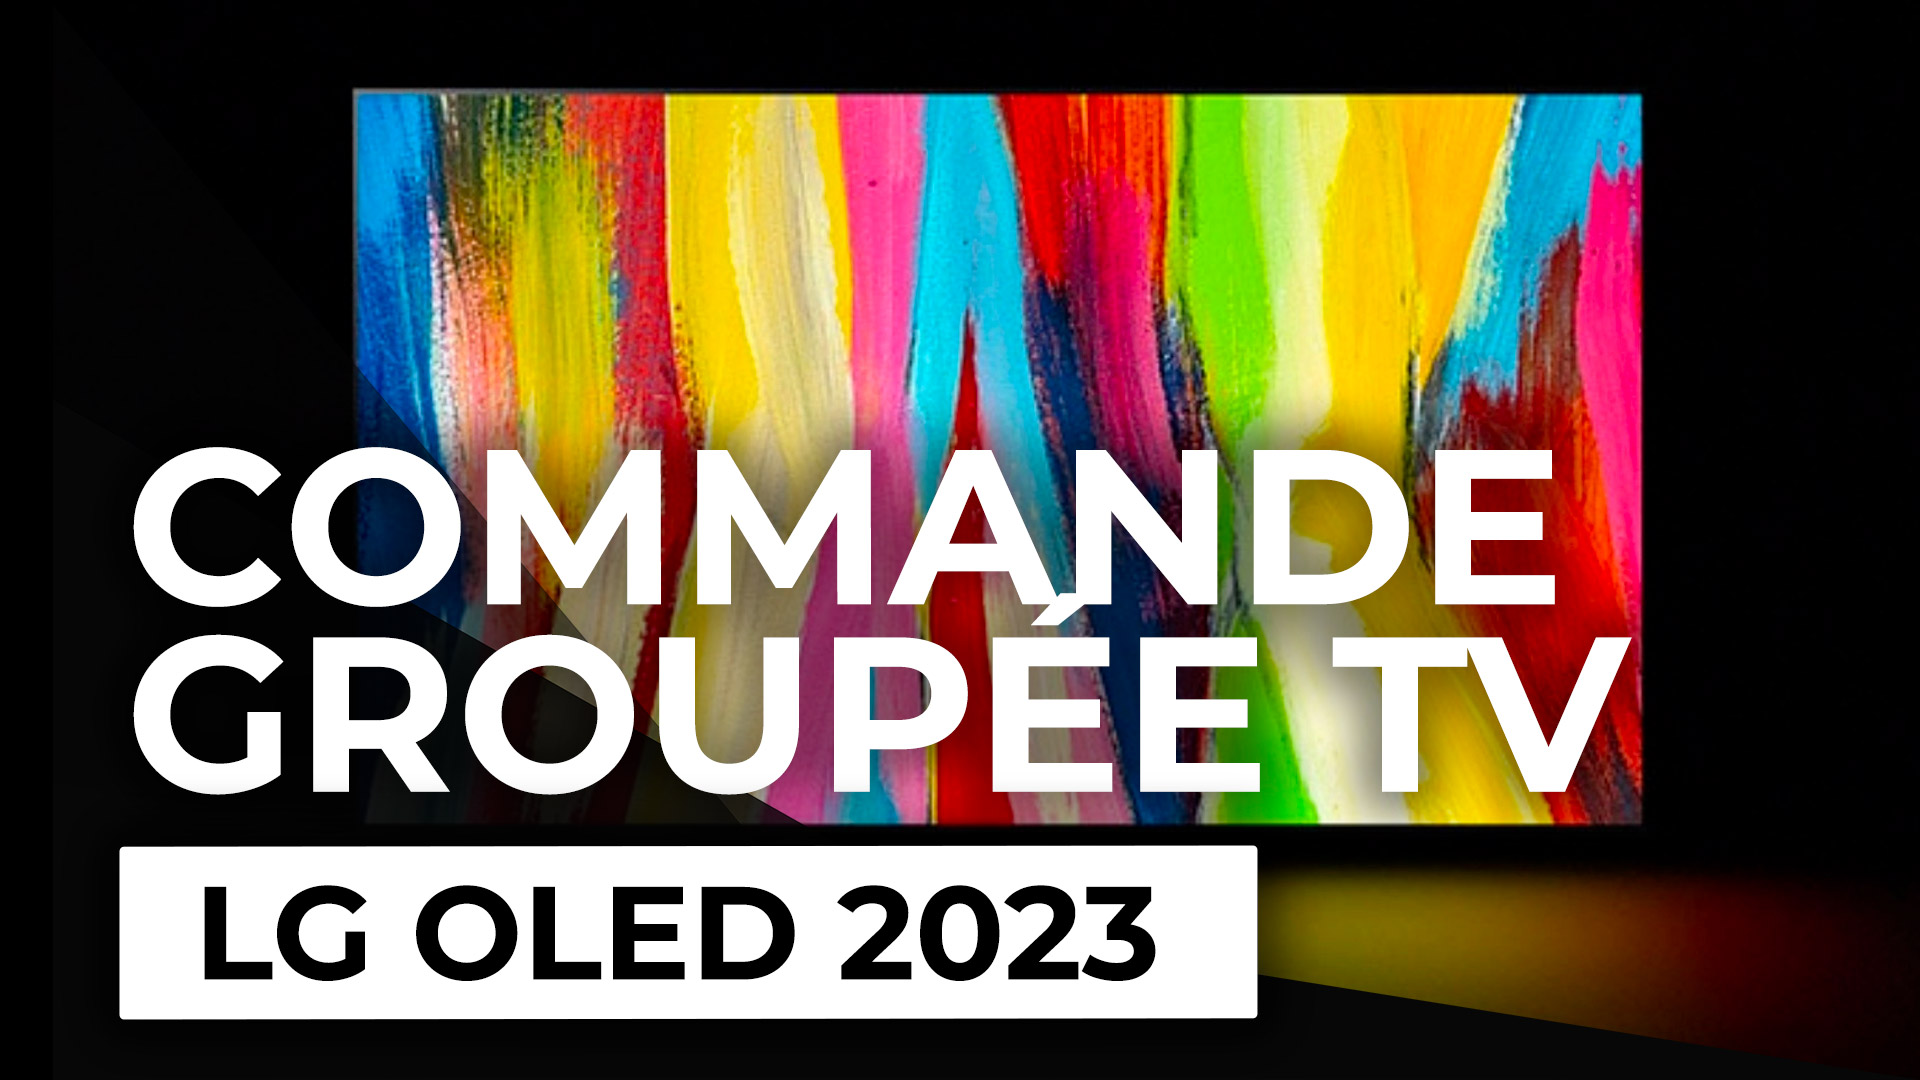 Commande Groupée TV : les LG OLED 2023 à prix cassé !